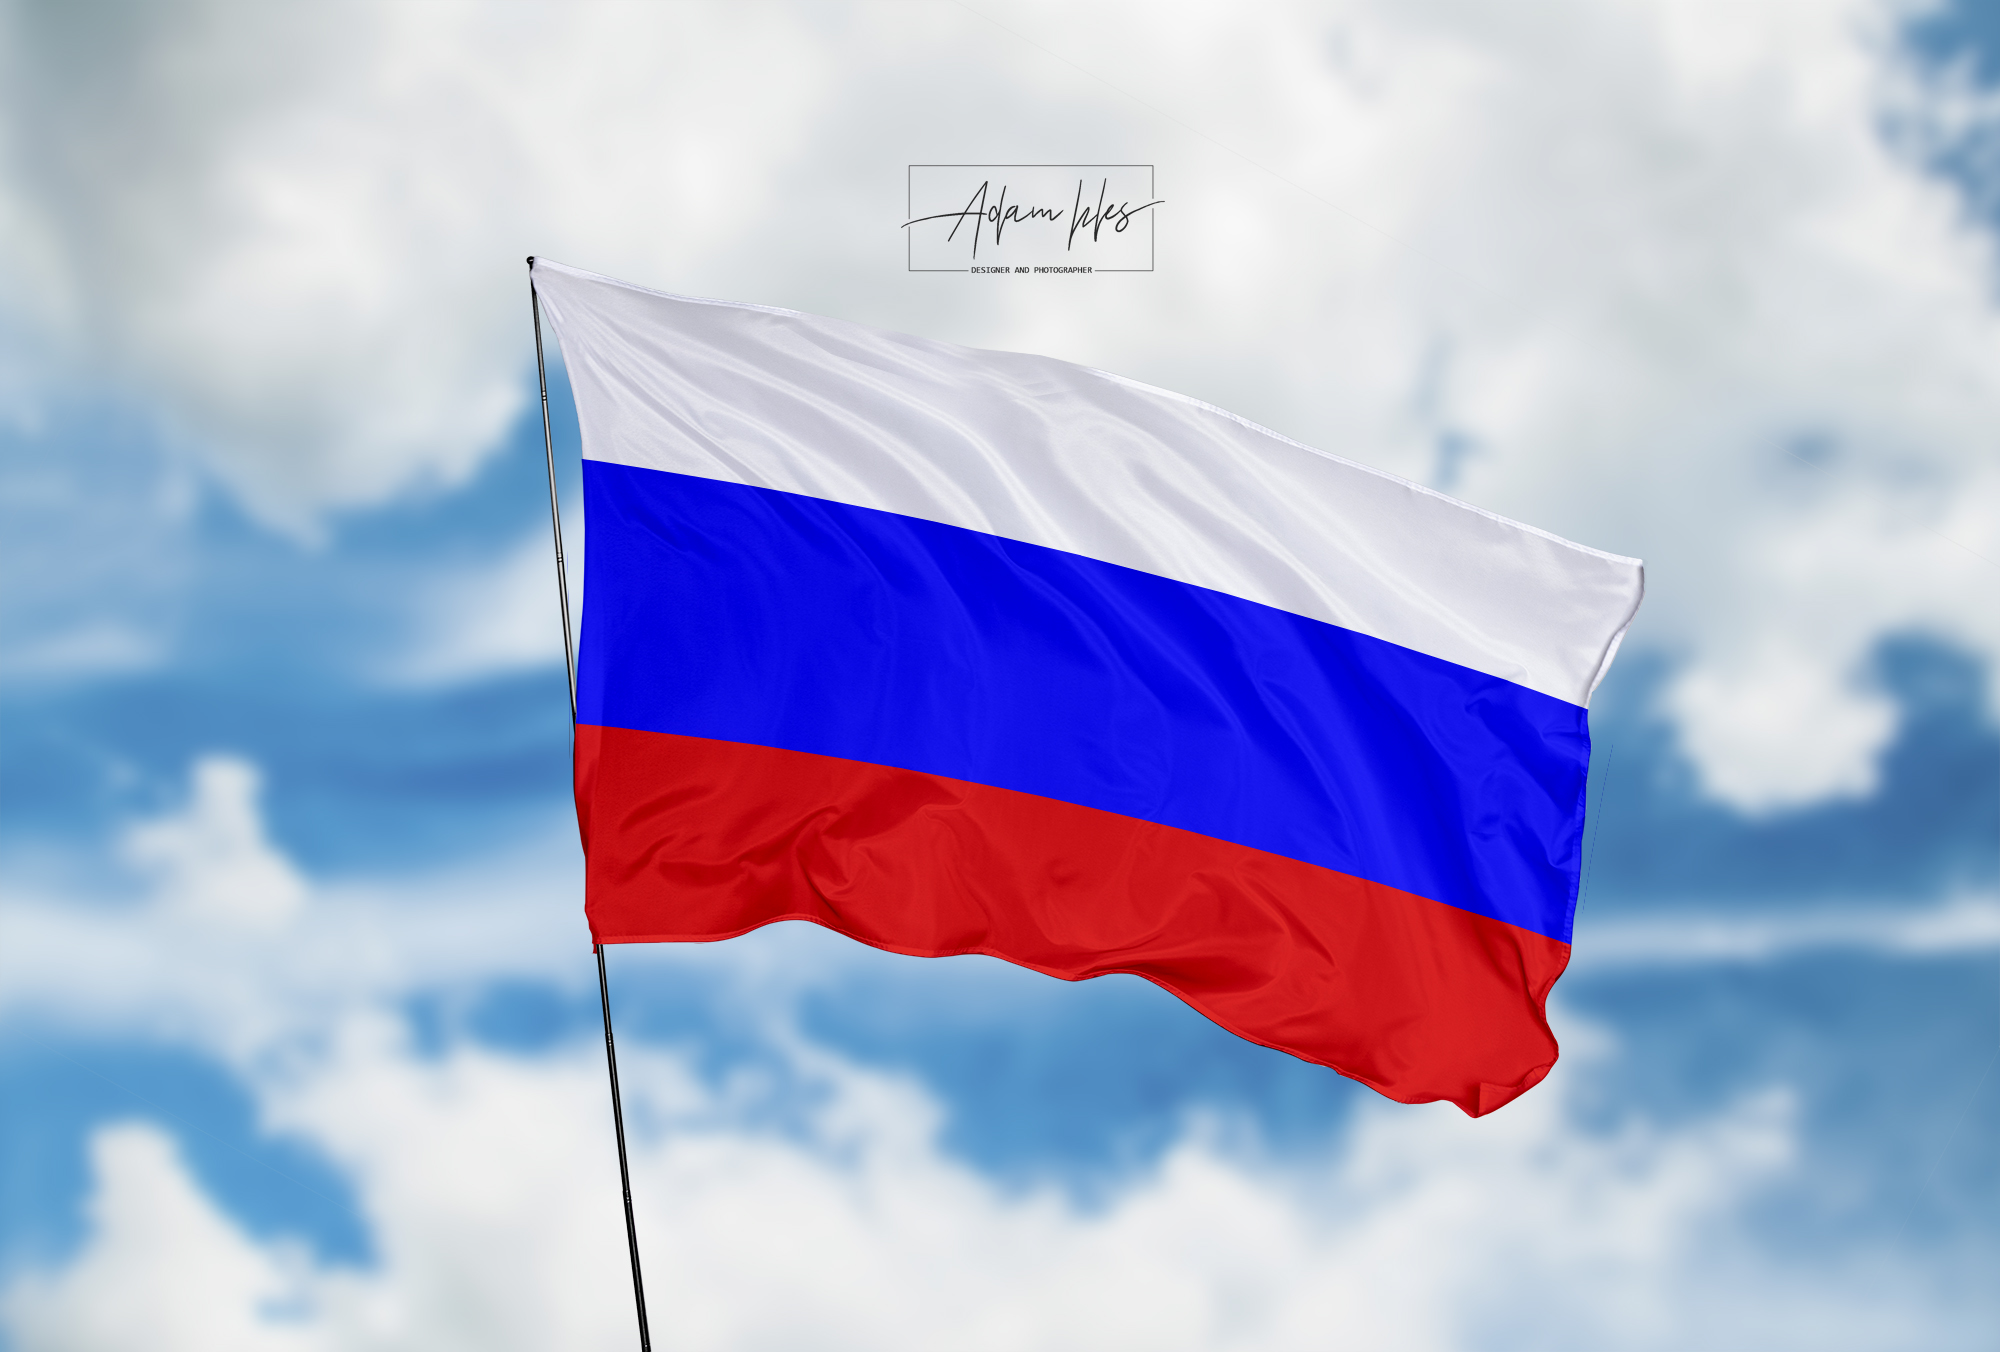 تحميل اجمل خلفية علم روسيا يرفرف في السماء - اجمل خلفيات روسيا الرائعة